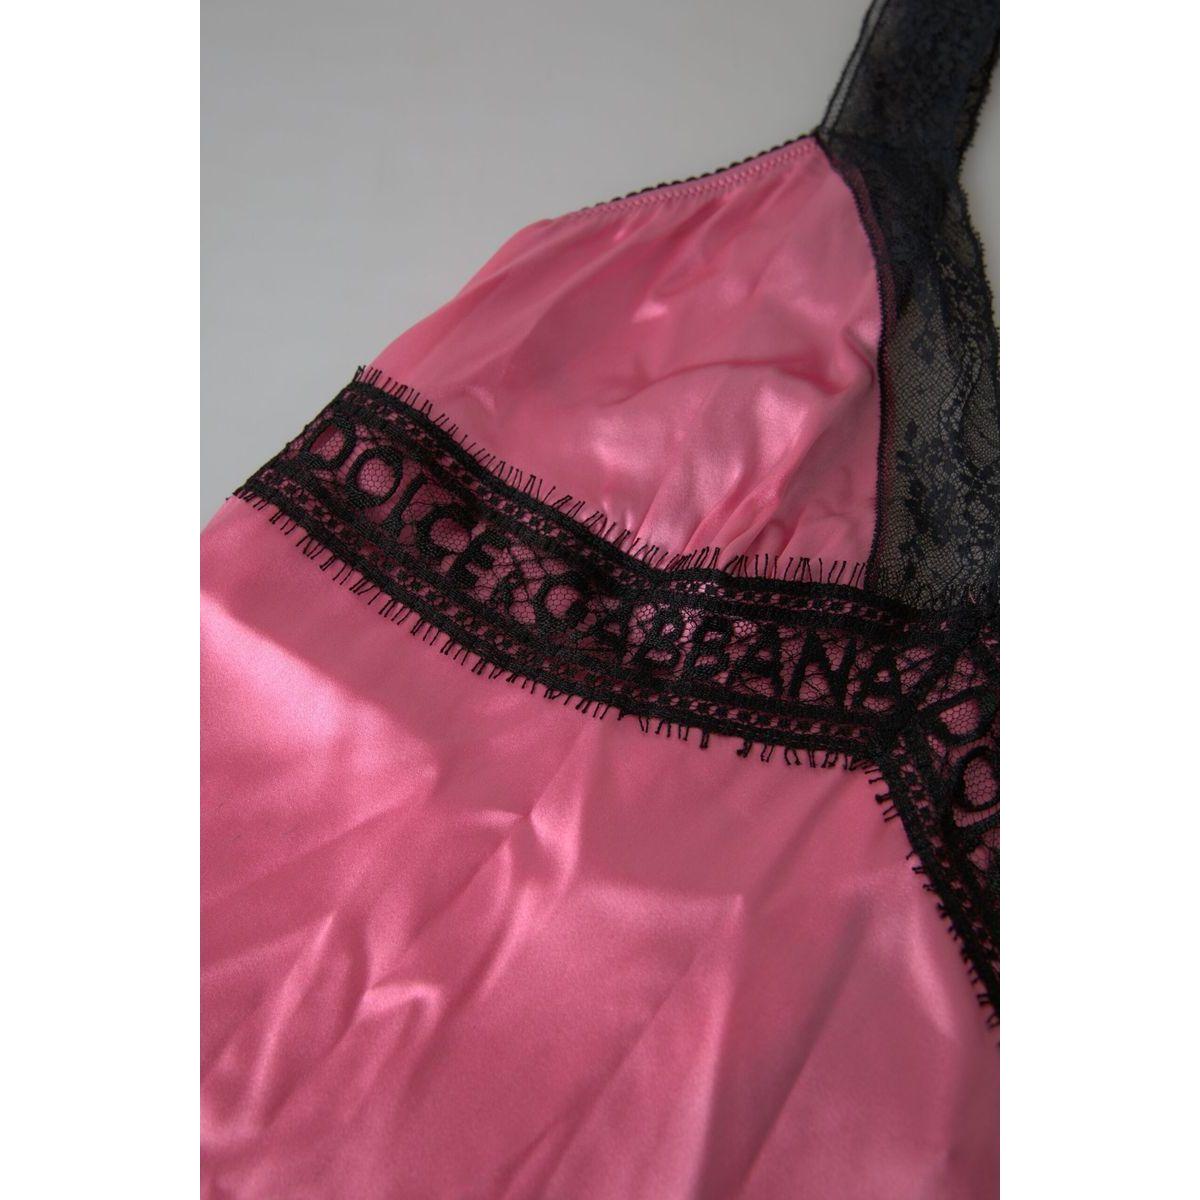 Dolce & Gabbana Silken Charm Pink Camisole pink-lace-silk-sleepwear-camisole-top-underwear